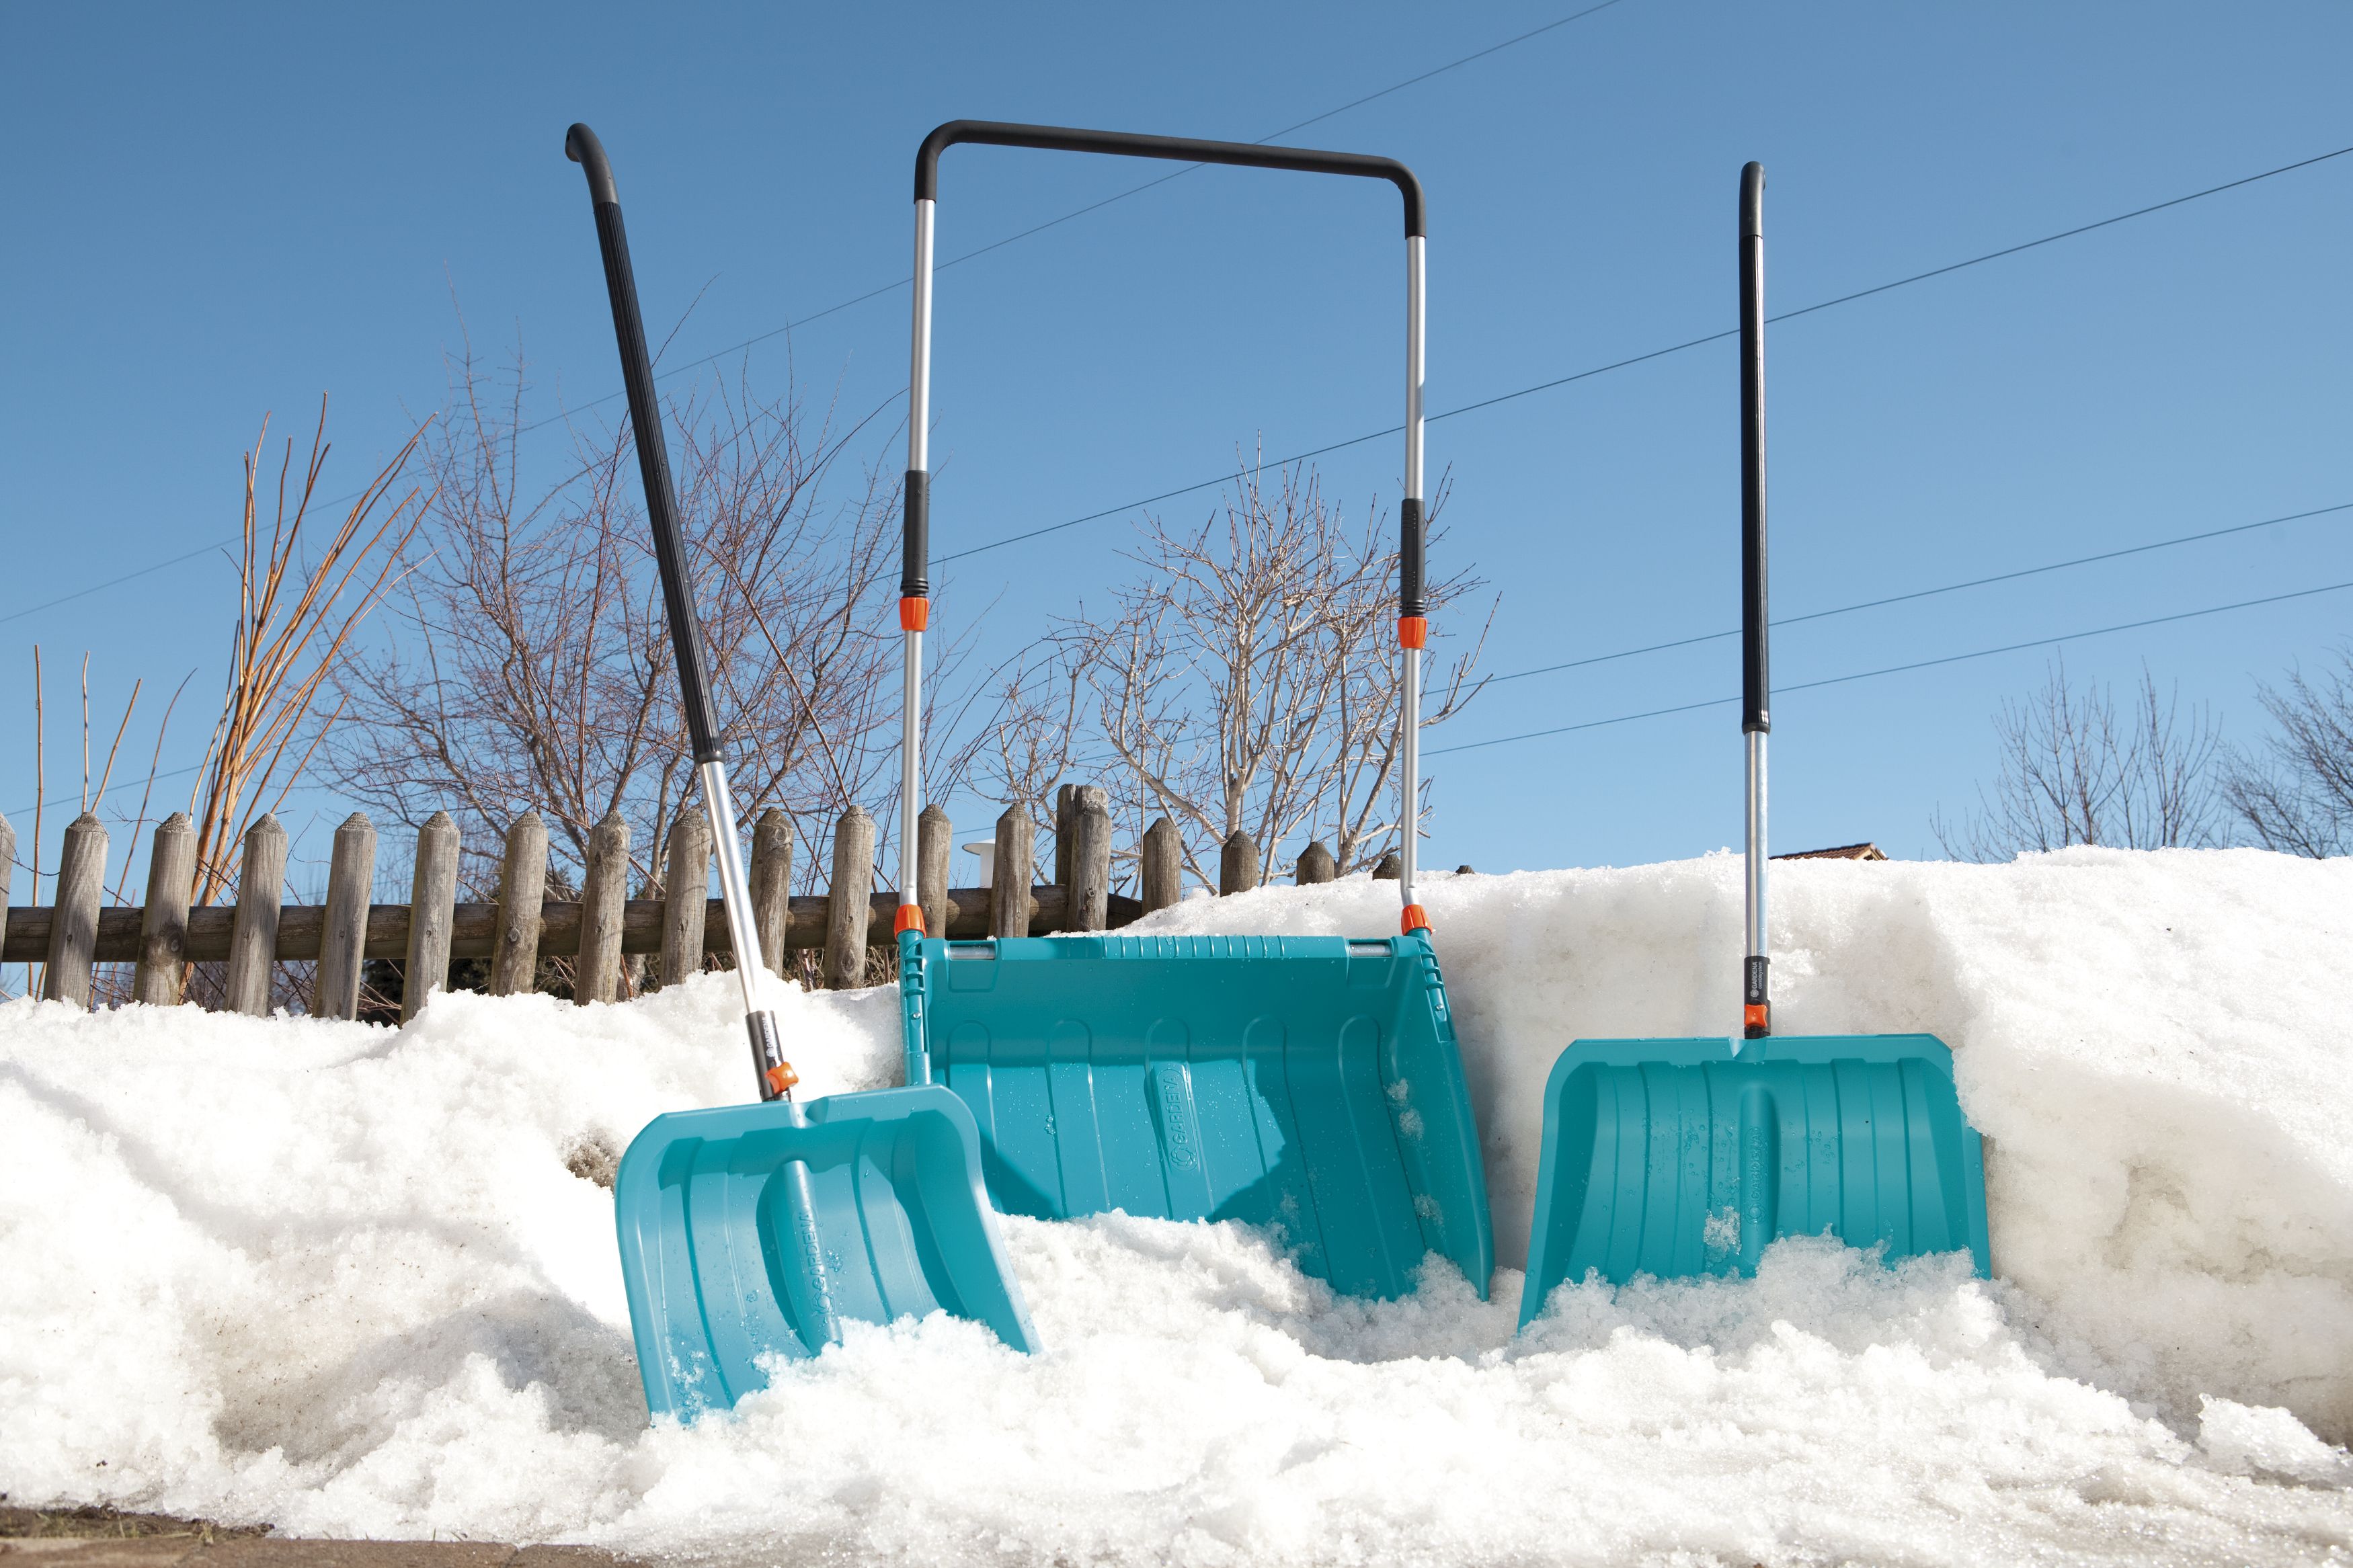 Очистка участка от снега. Скрепер для уборки снега Gardena 03260-20.000.00. Уборка снега. Скребки для снега. Скрепер для снега.